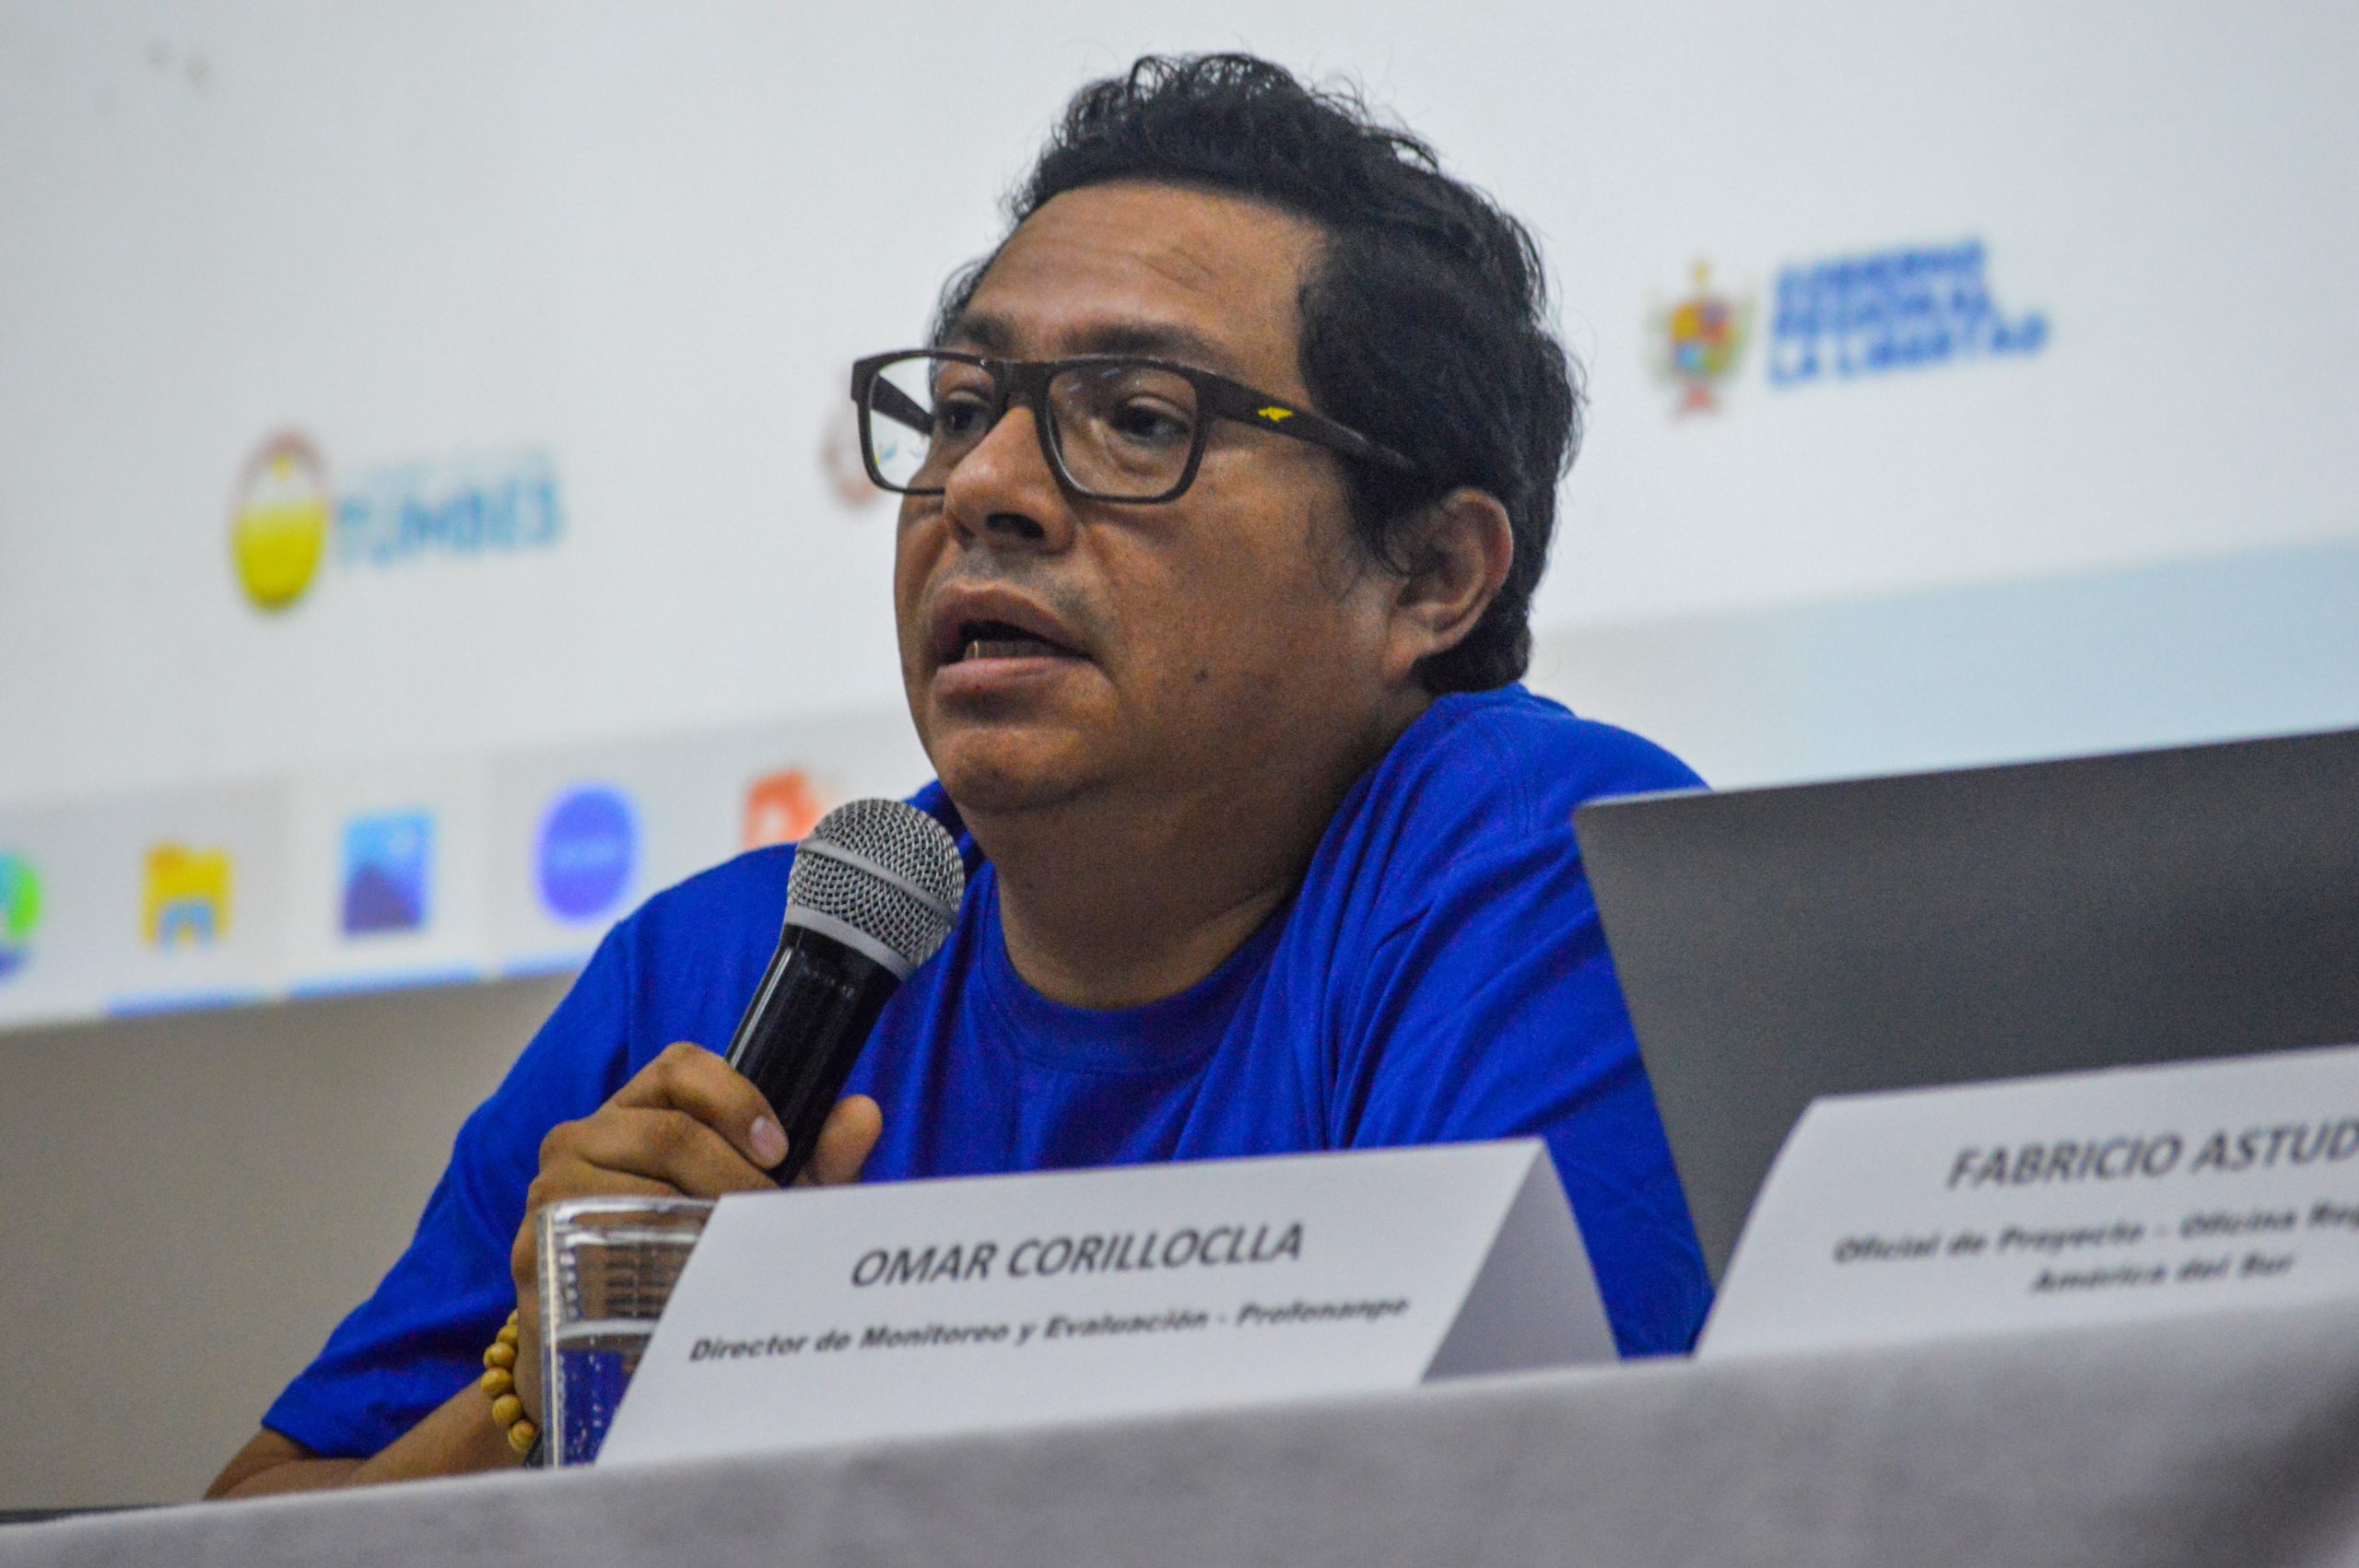 Omar Corilloclla, Director de Monitoreo y Evaluación de Profonanpe comentando la participación de Profonanpe en el proyecto.